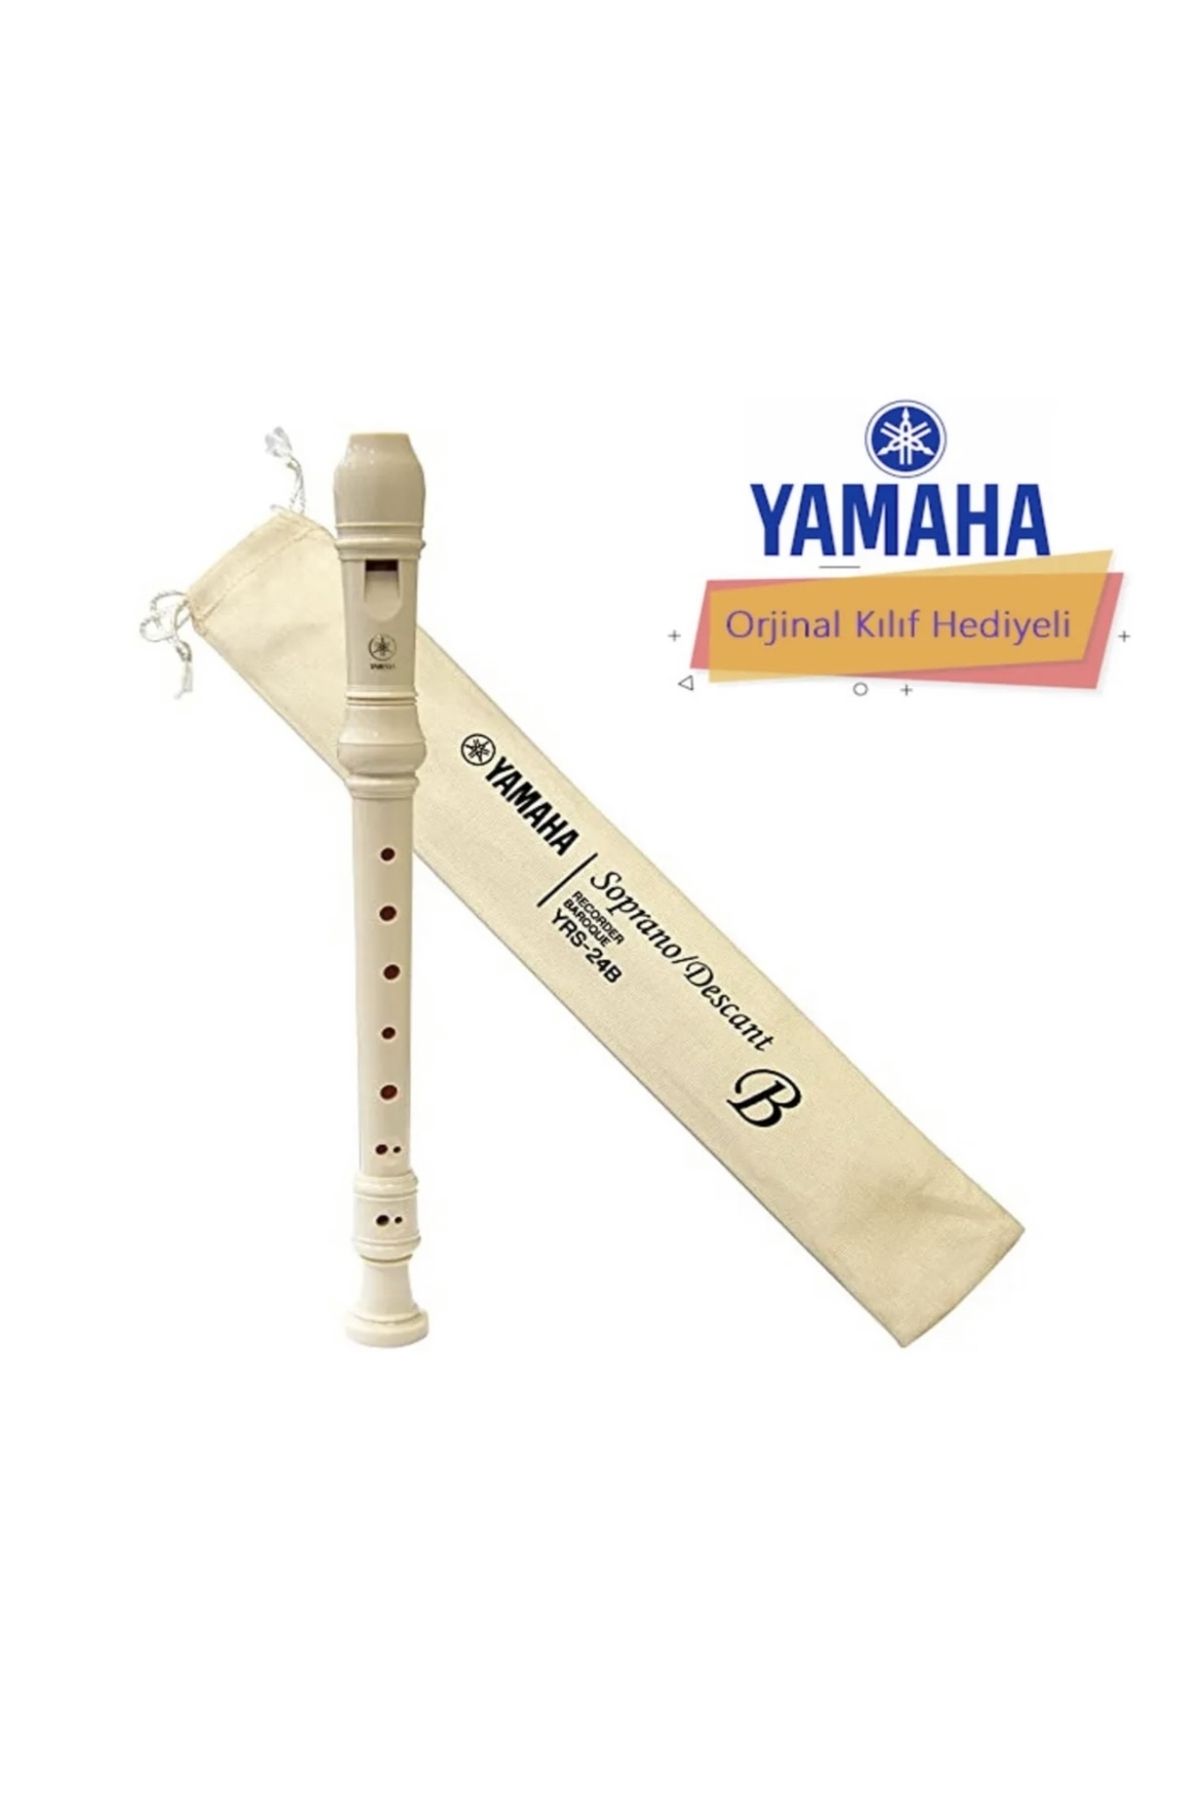 Yamaha Yrs23 Soprano Blok Flüt (Kılıf Hediyeli)